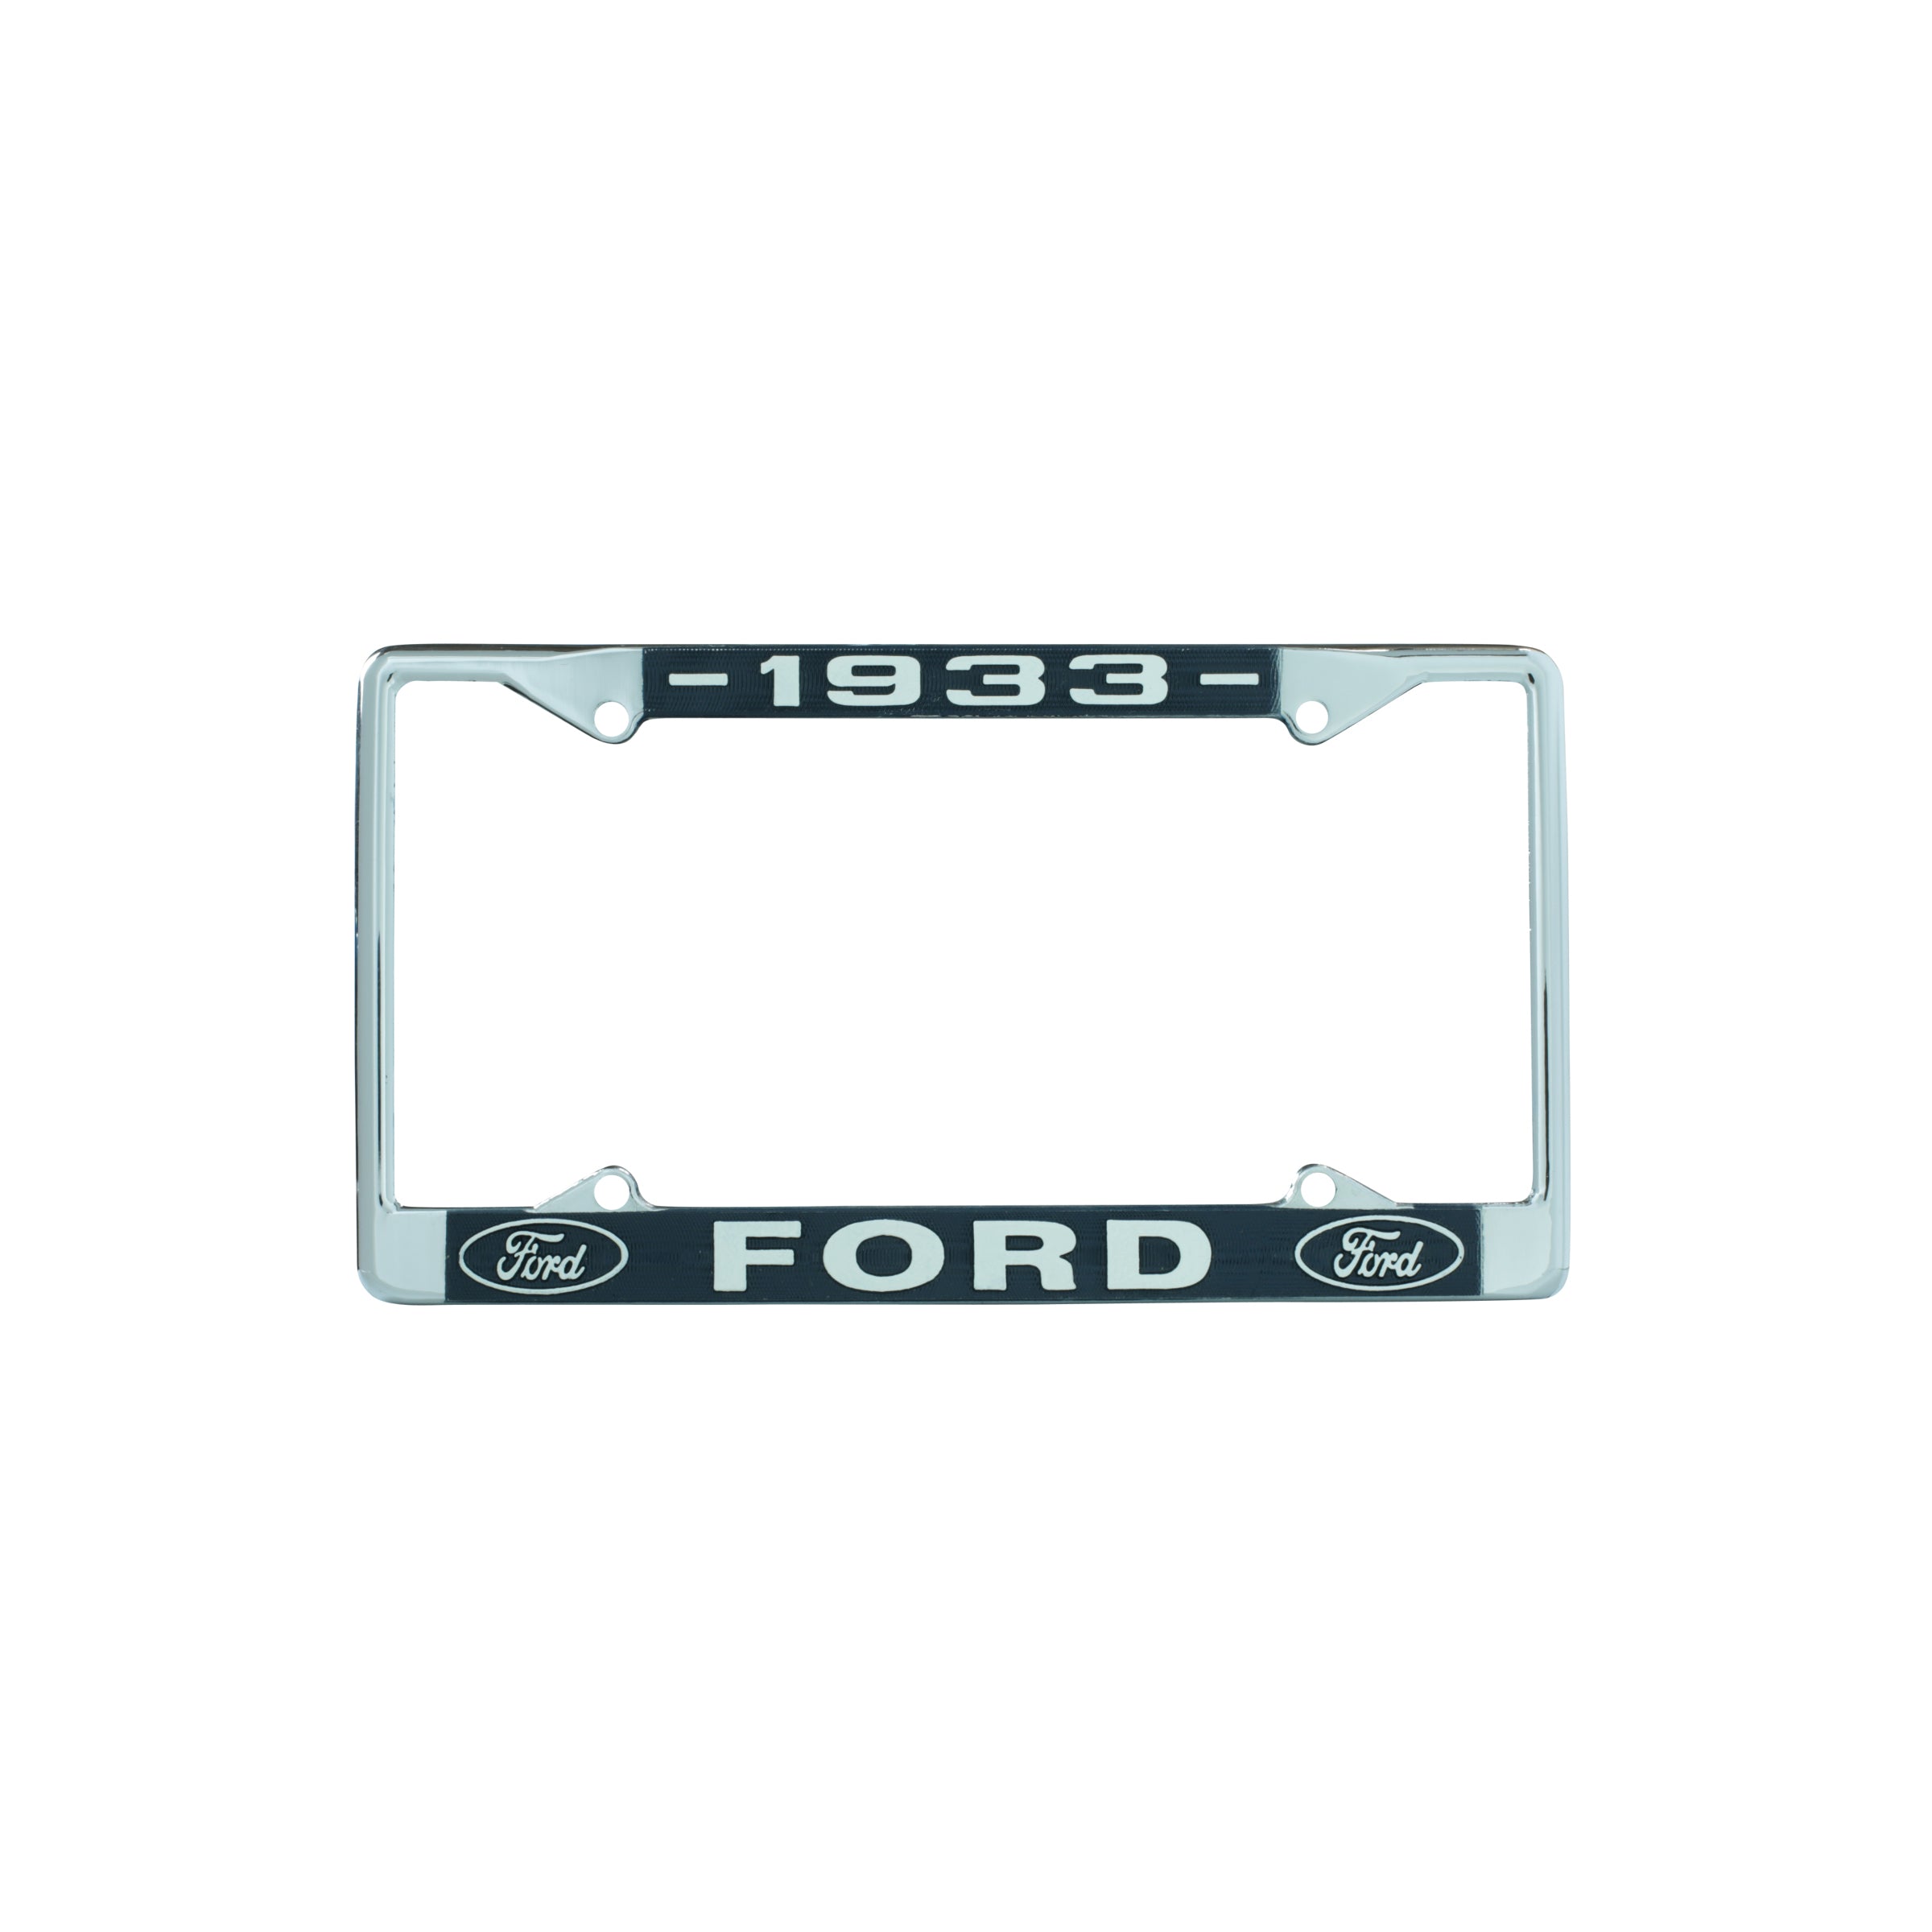 License Plate Frame • 1933 Ford